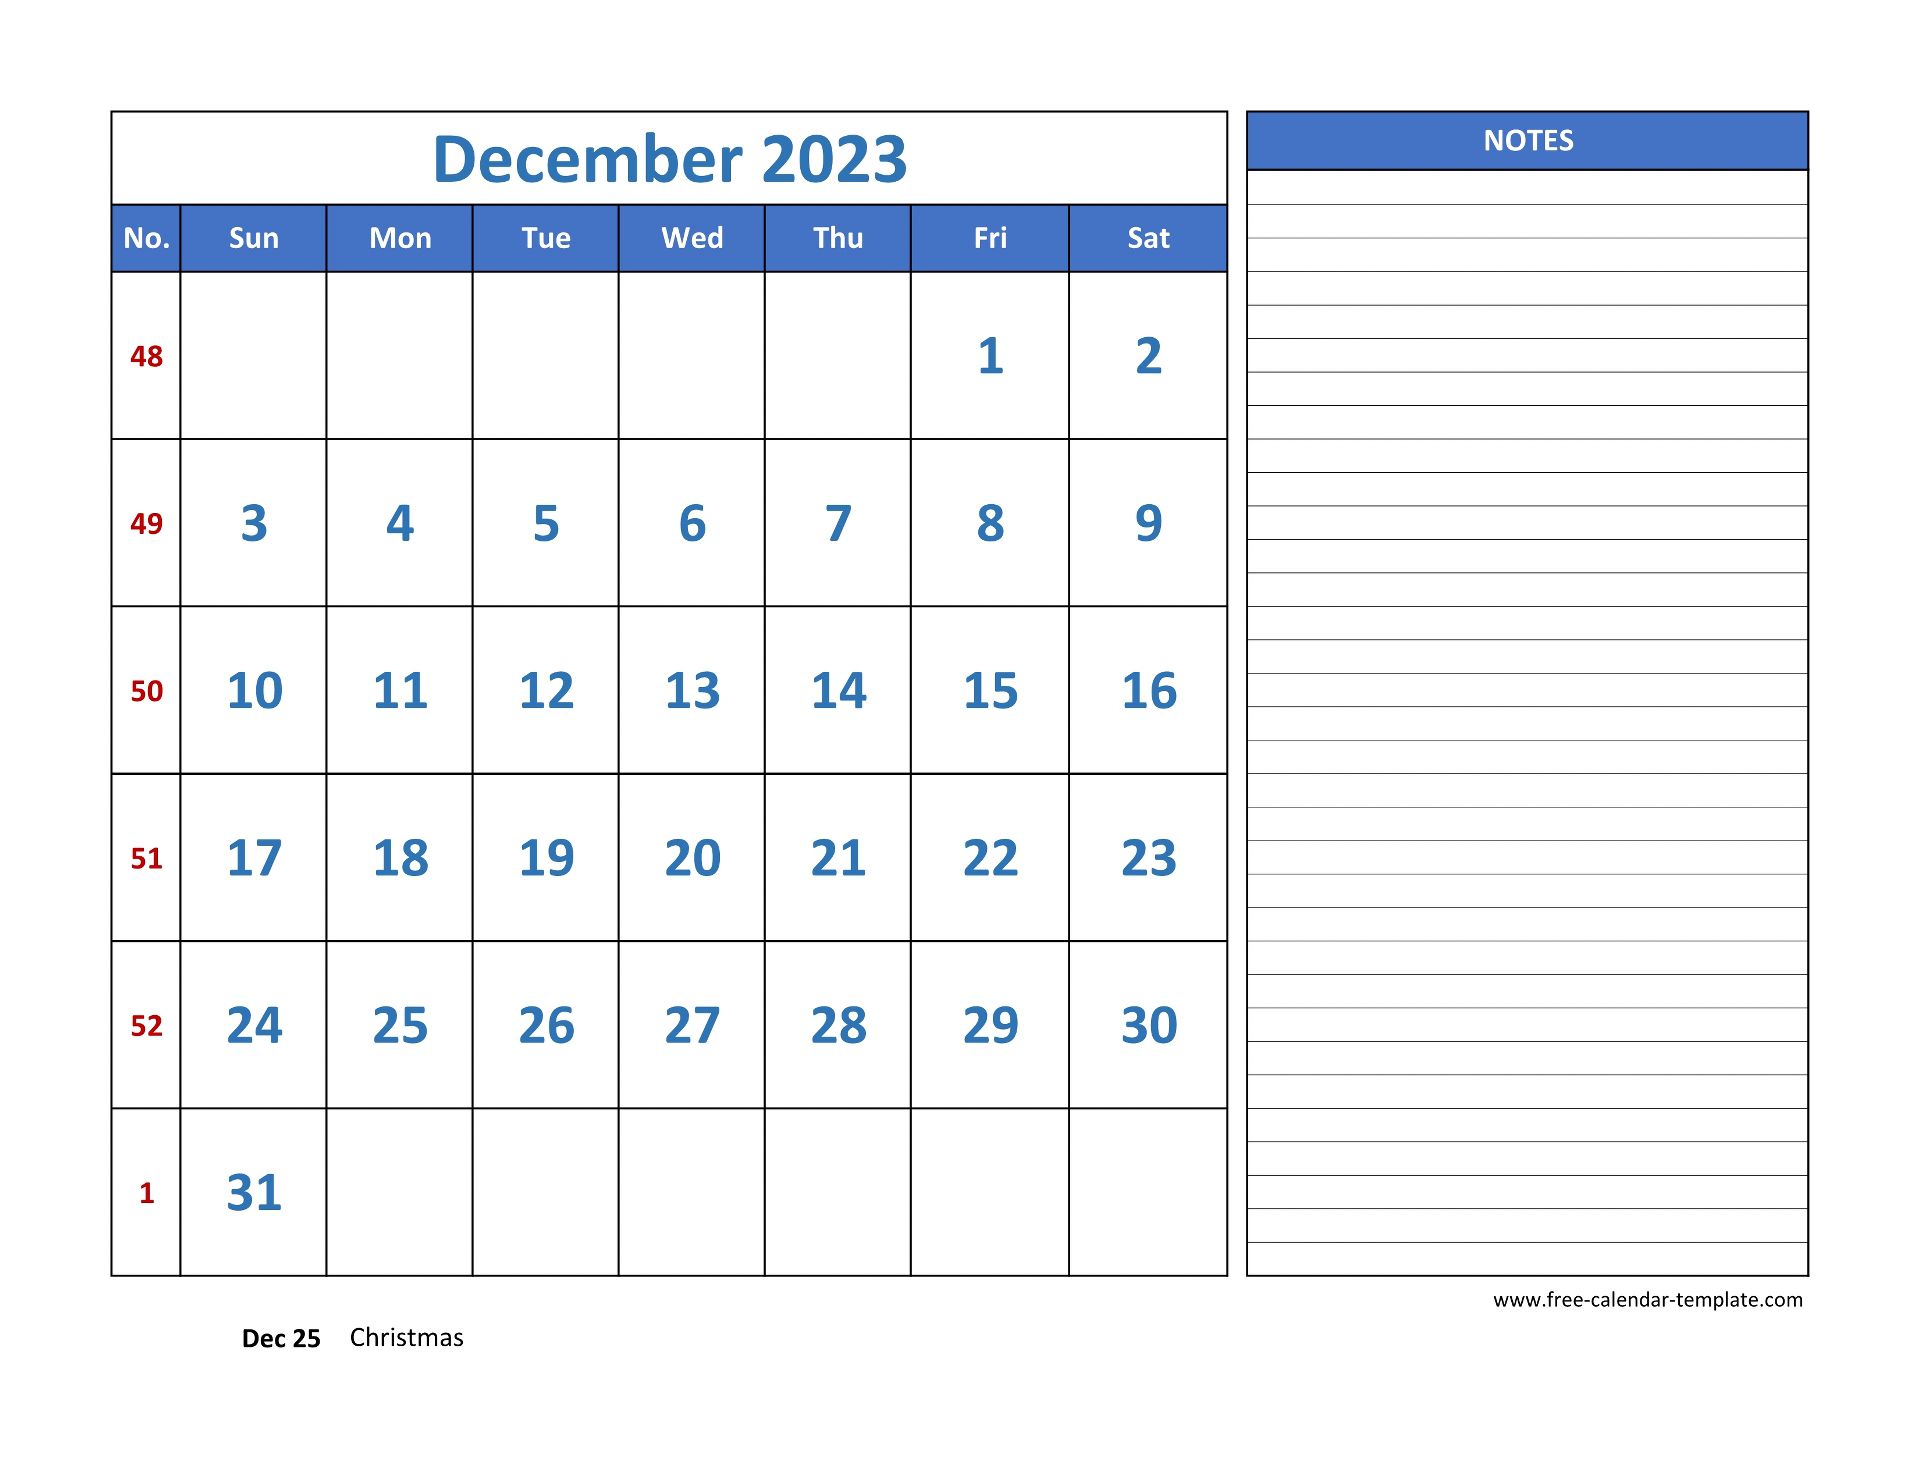 december-2023-free-calendar-tempplate-free-calendar-template